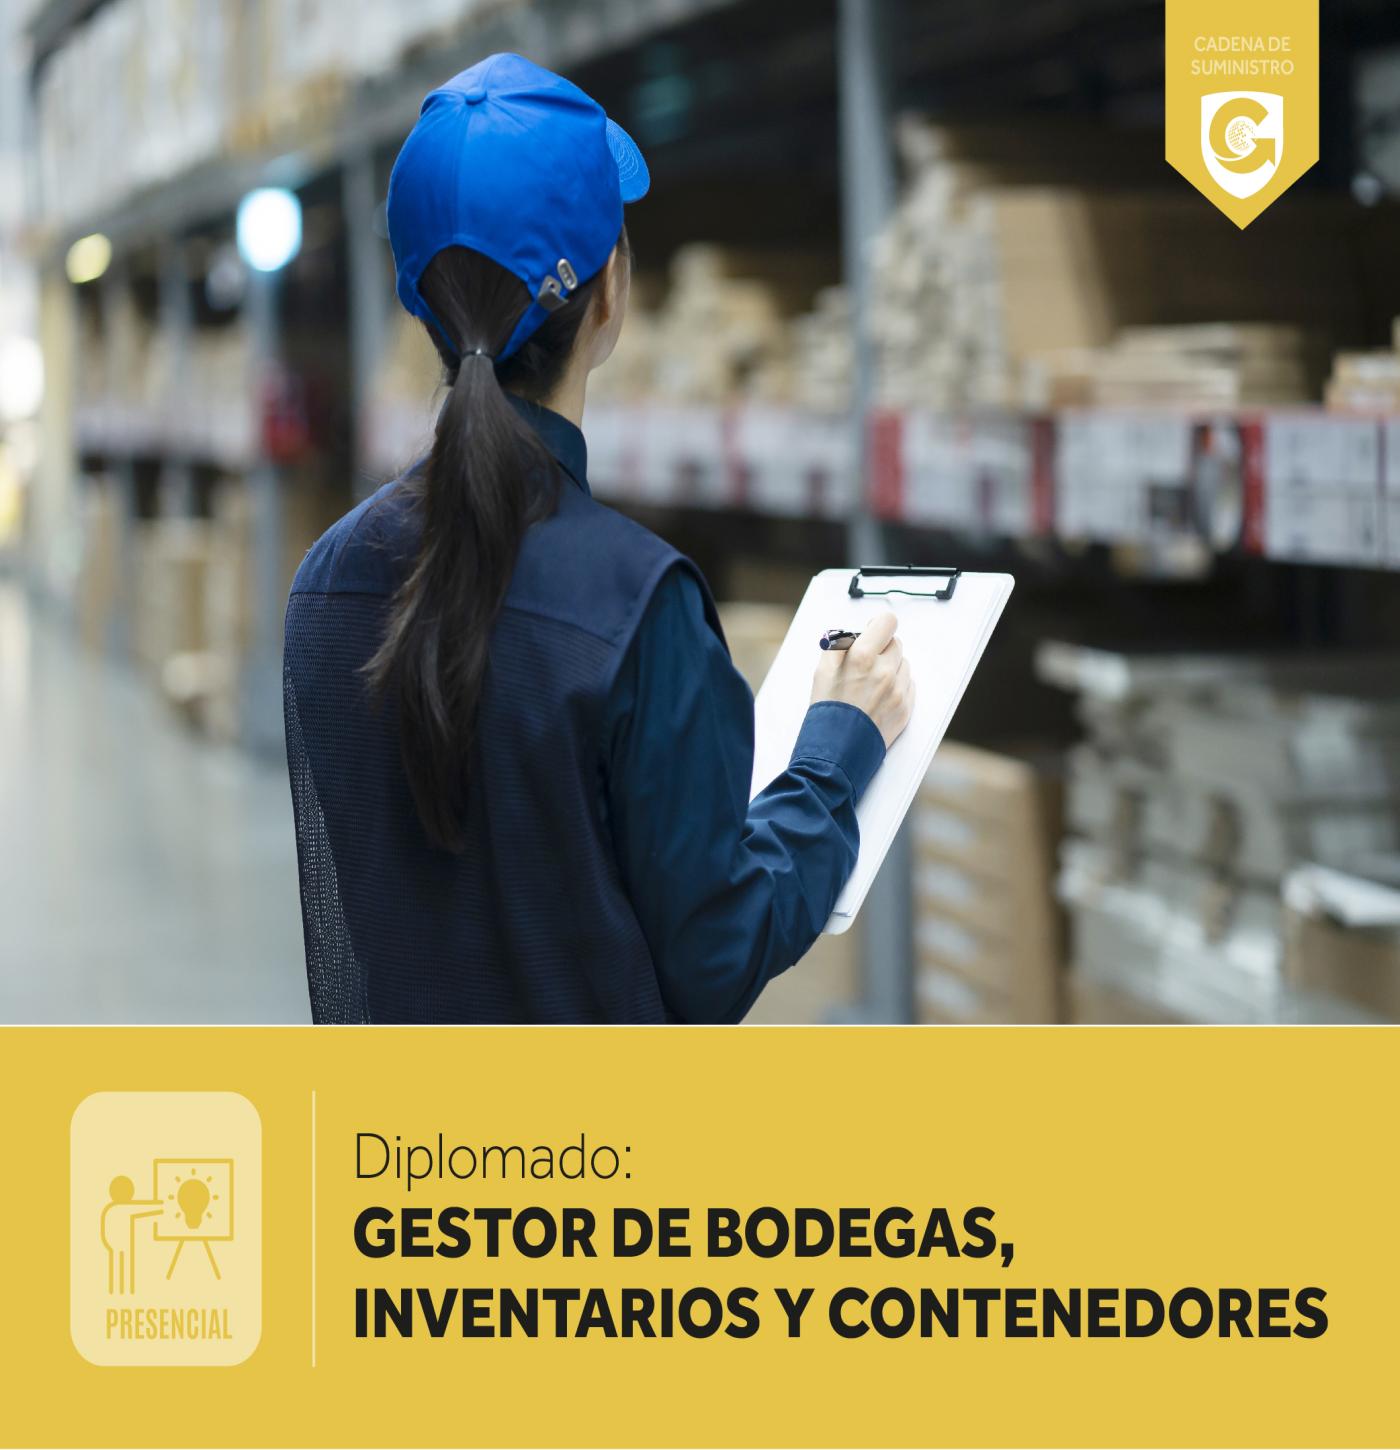 GESTOR DE BODEGAS, INVENTARIOS Y CONTENEDORES